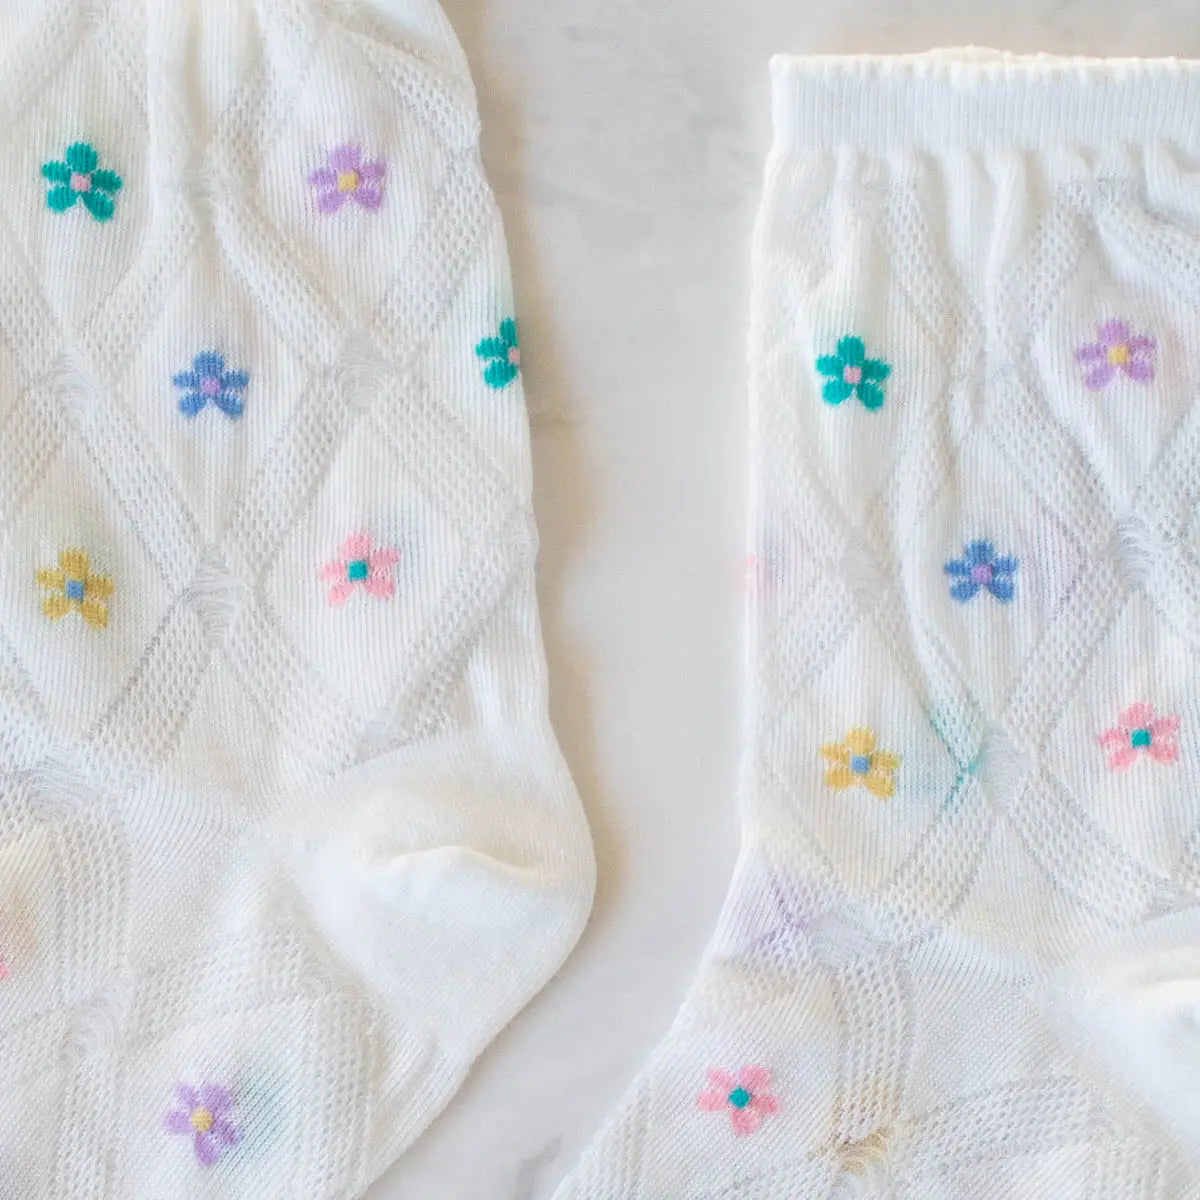 Little Flower Socks - Proper